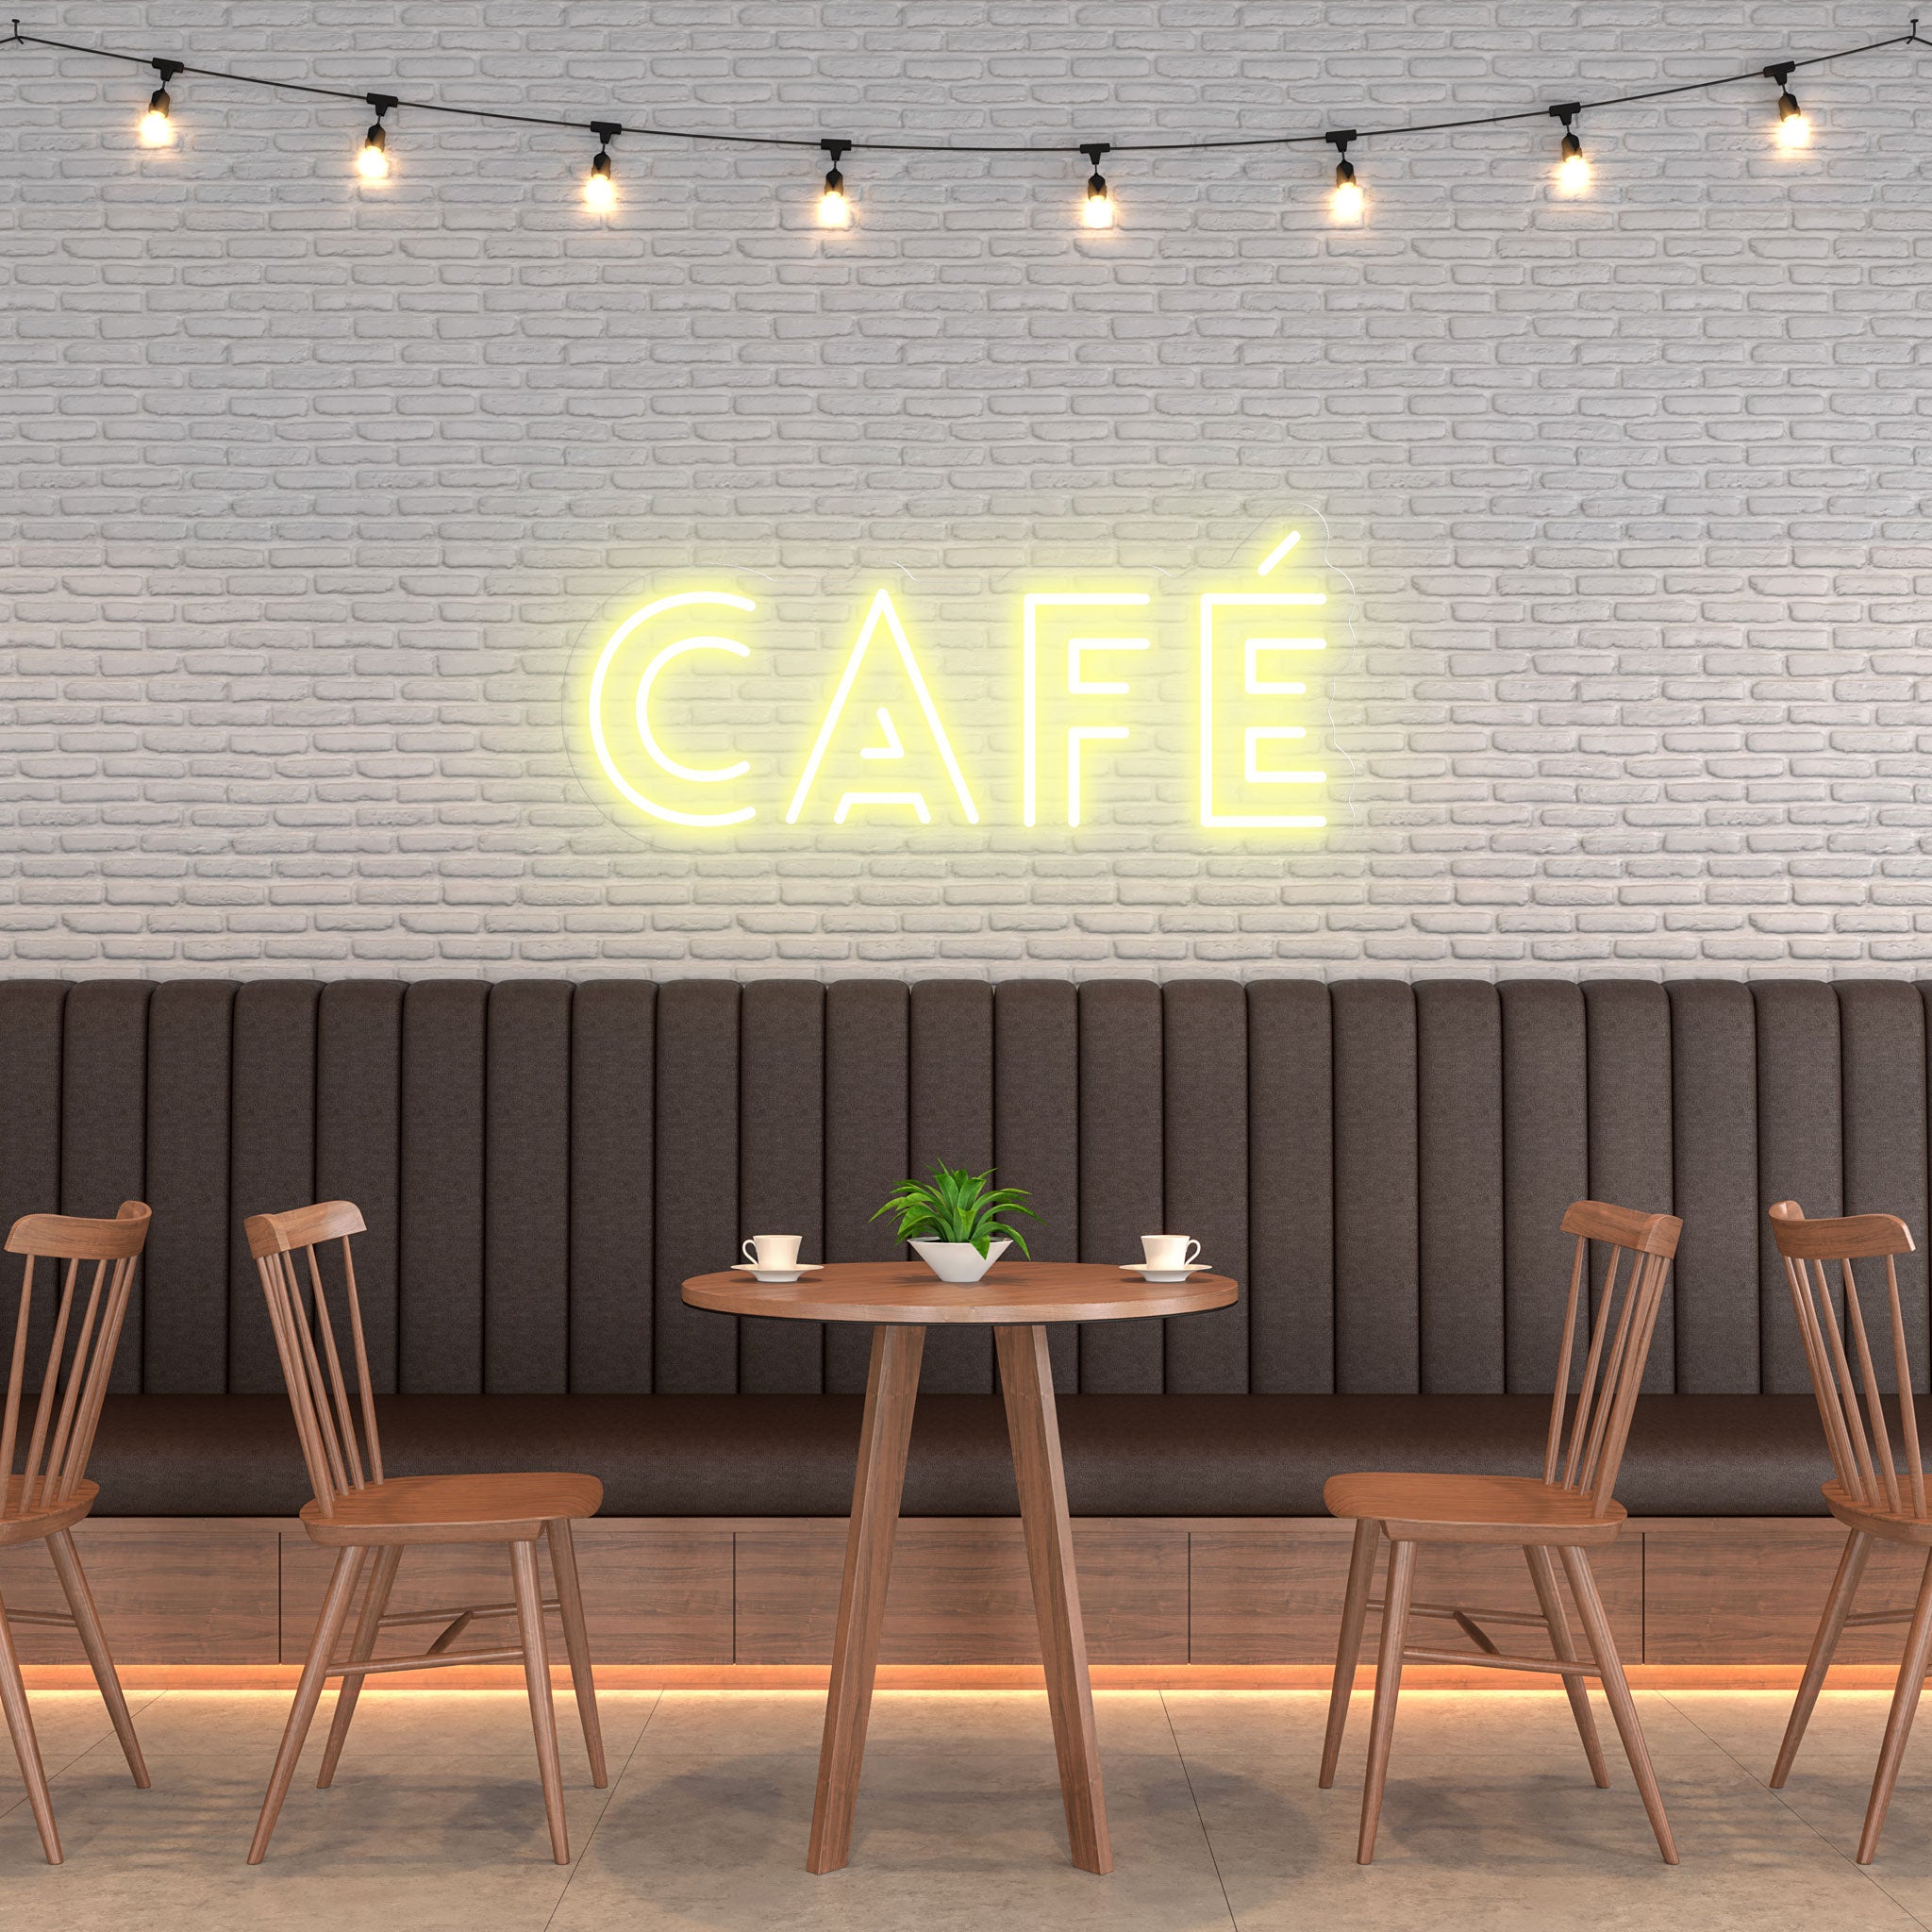 Café - Neon Sign - Café Venue